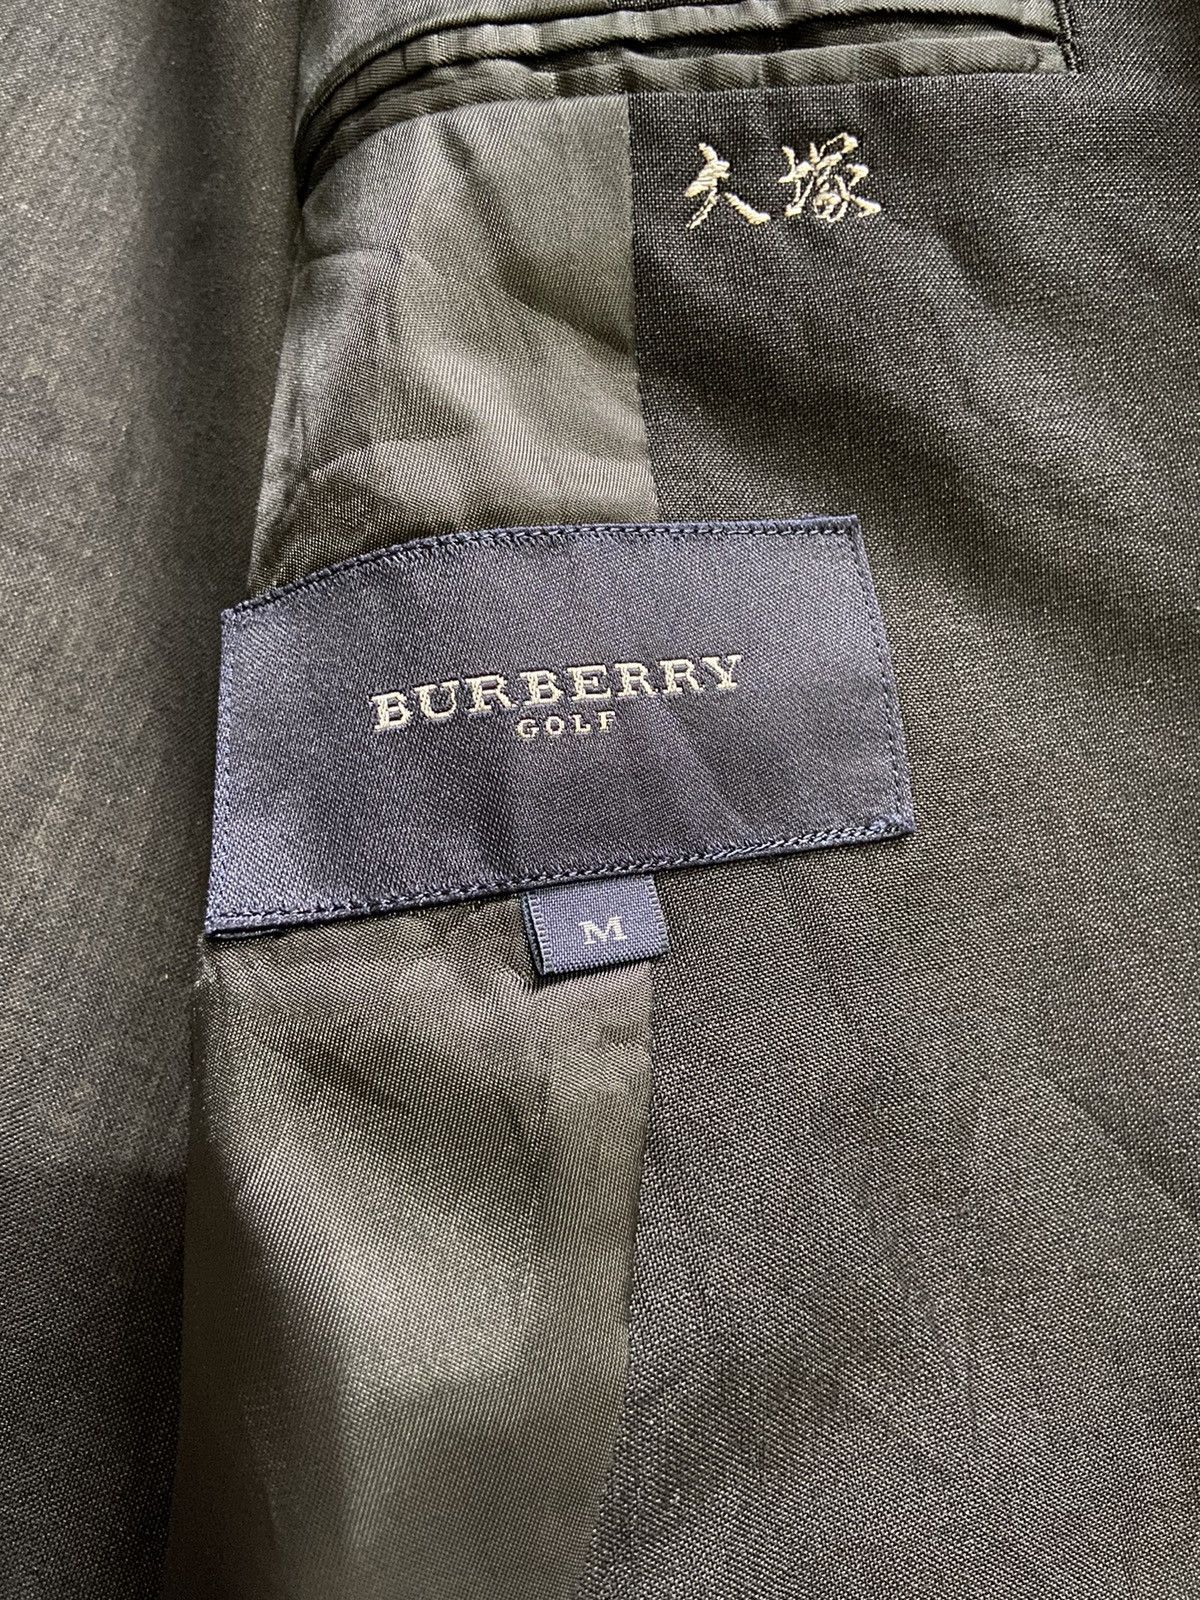 Burberry Golf Blazer Jacket - 4